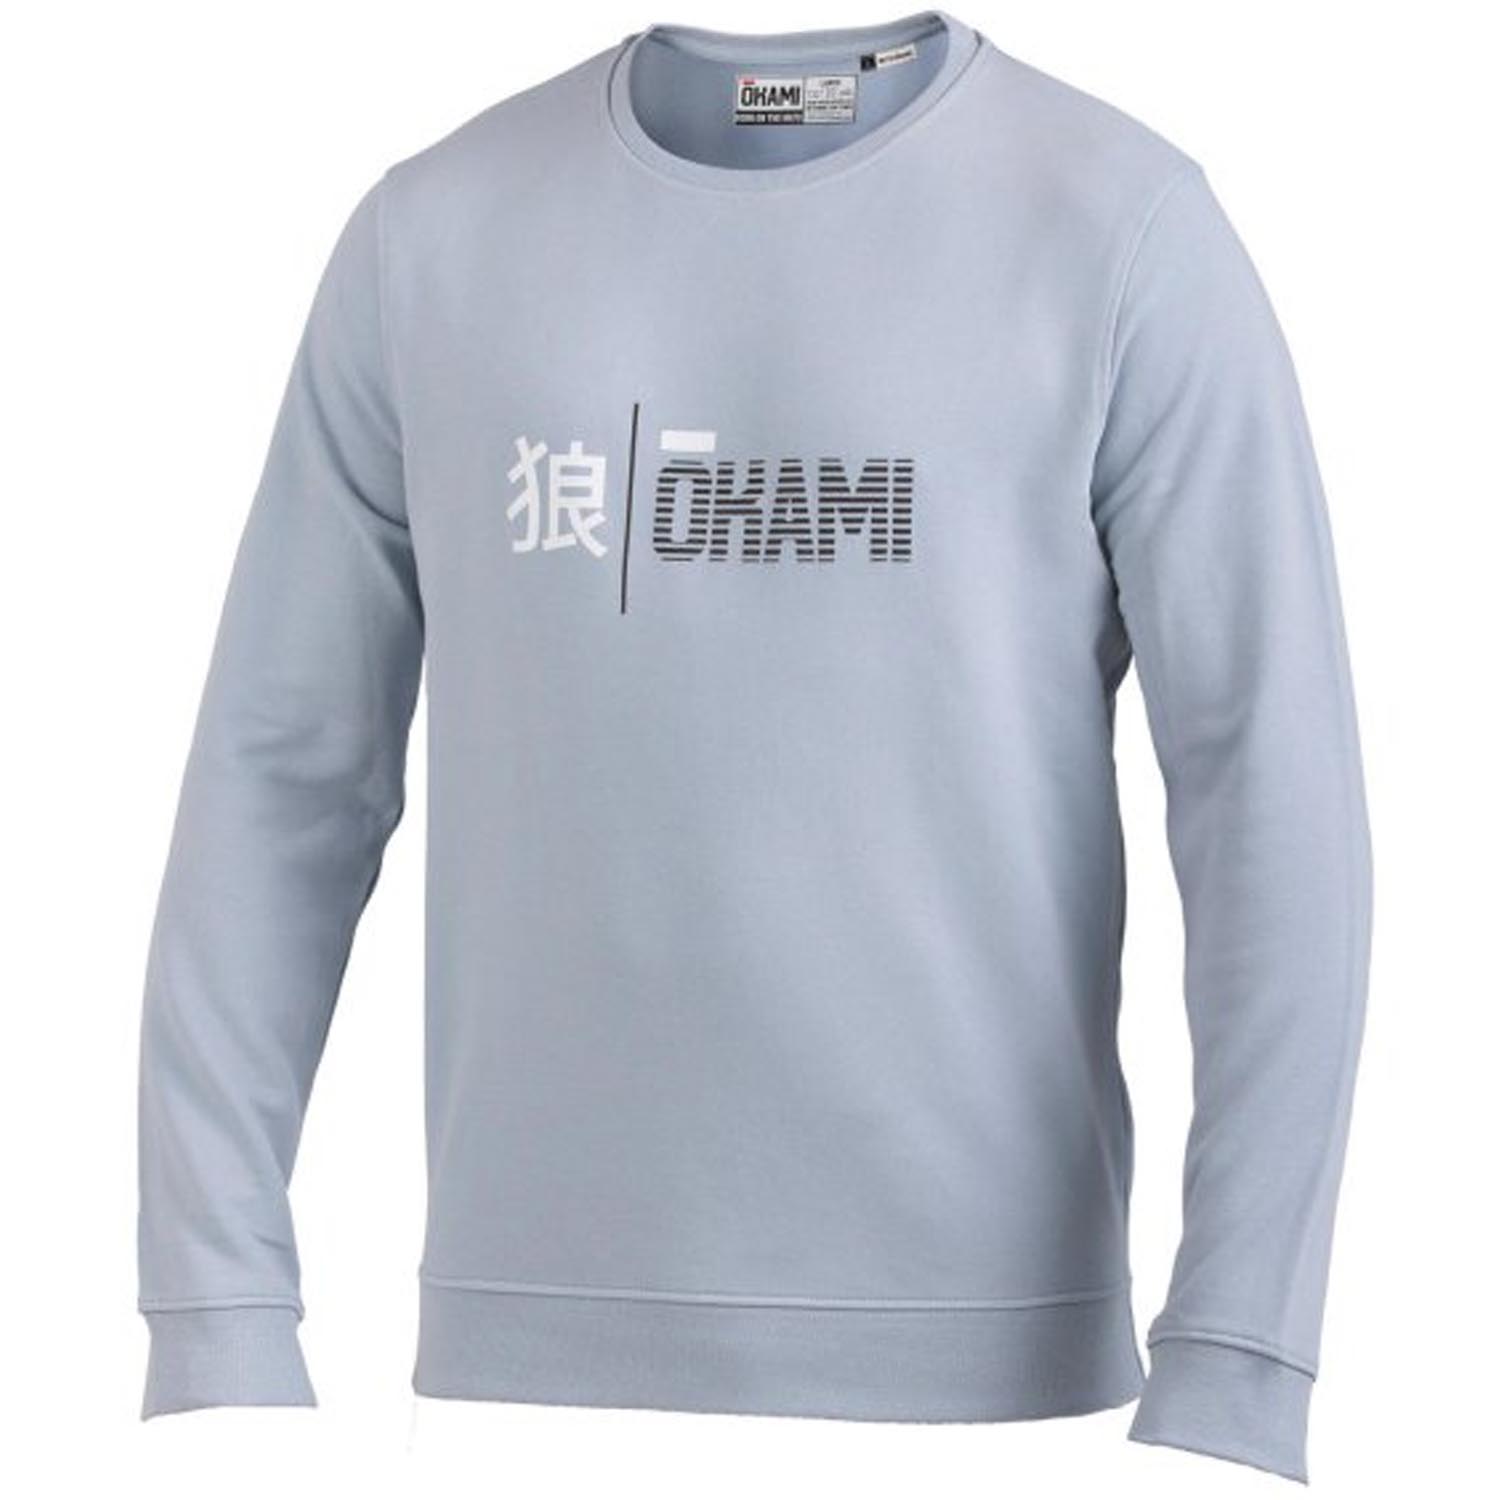 OKAMI Sweater, Organic Kanji Stripes, light blue, L